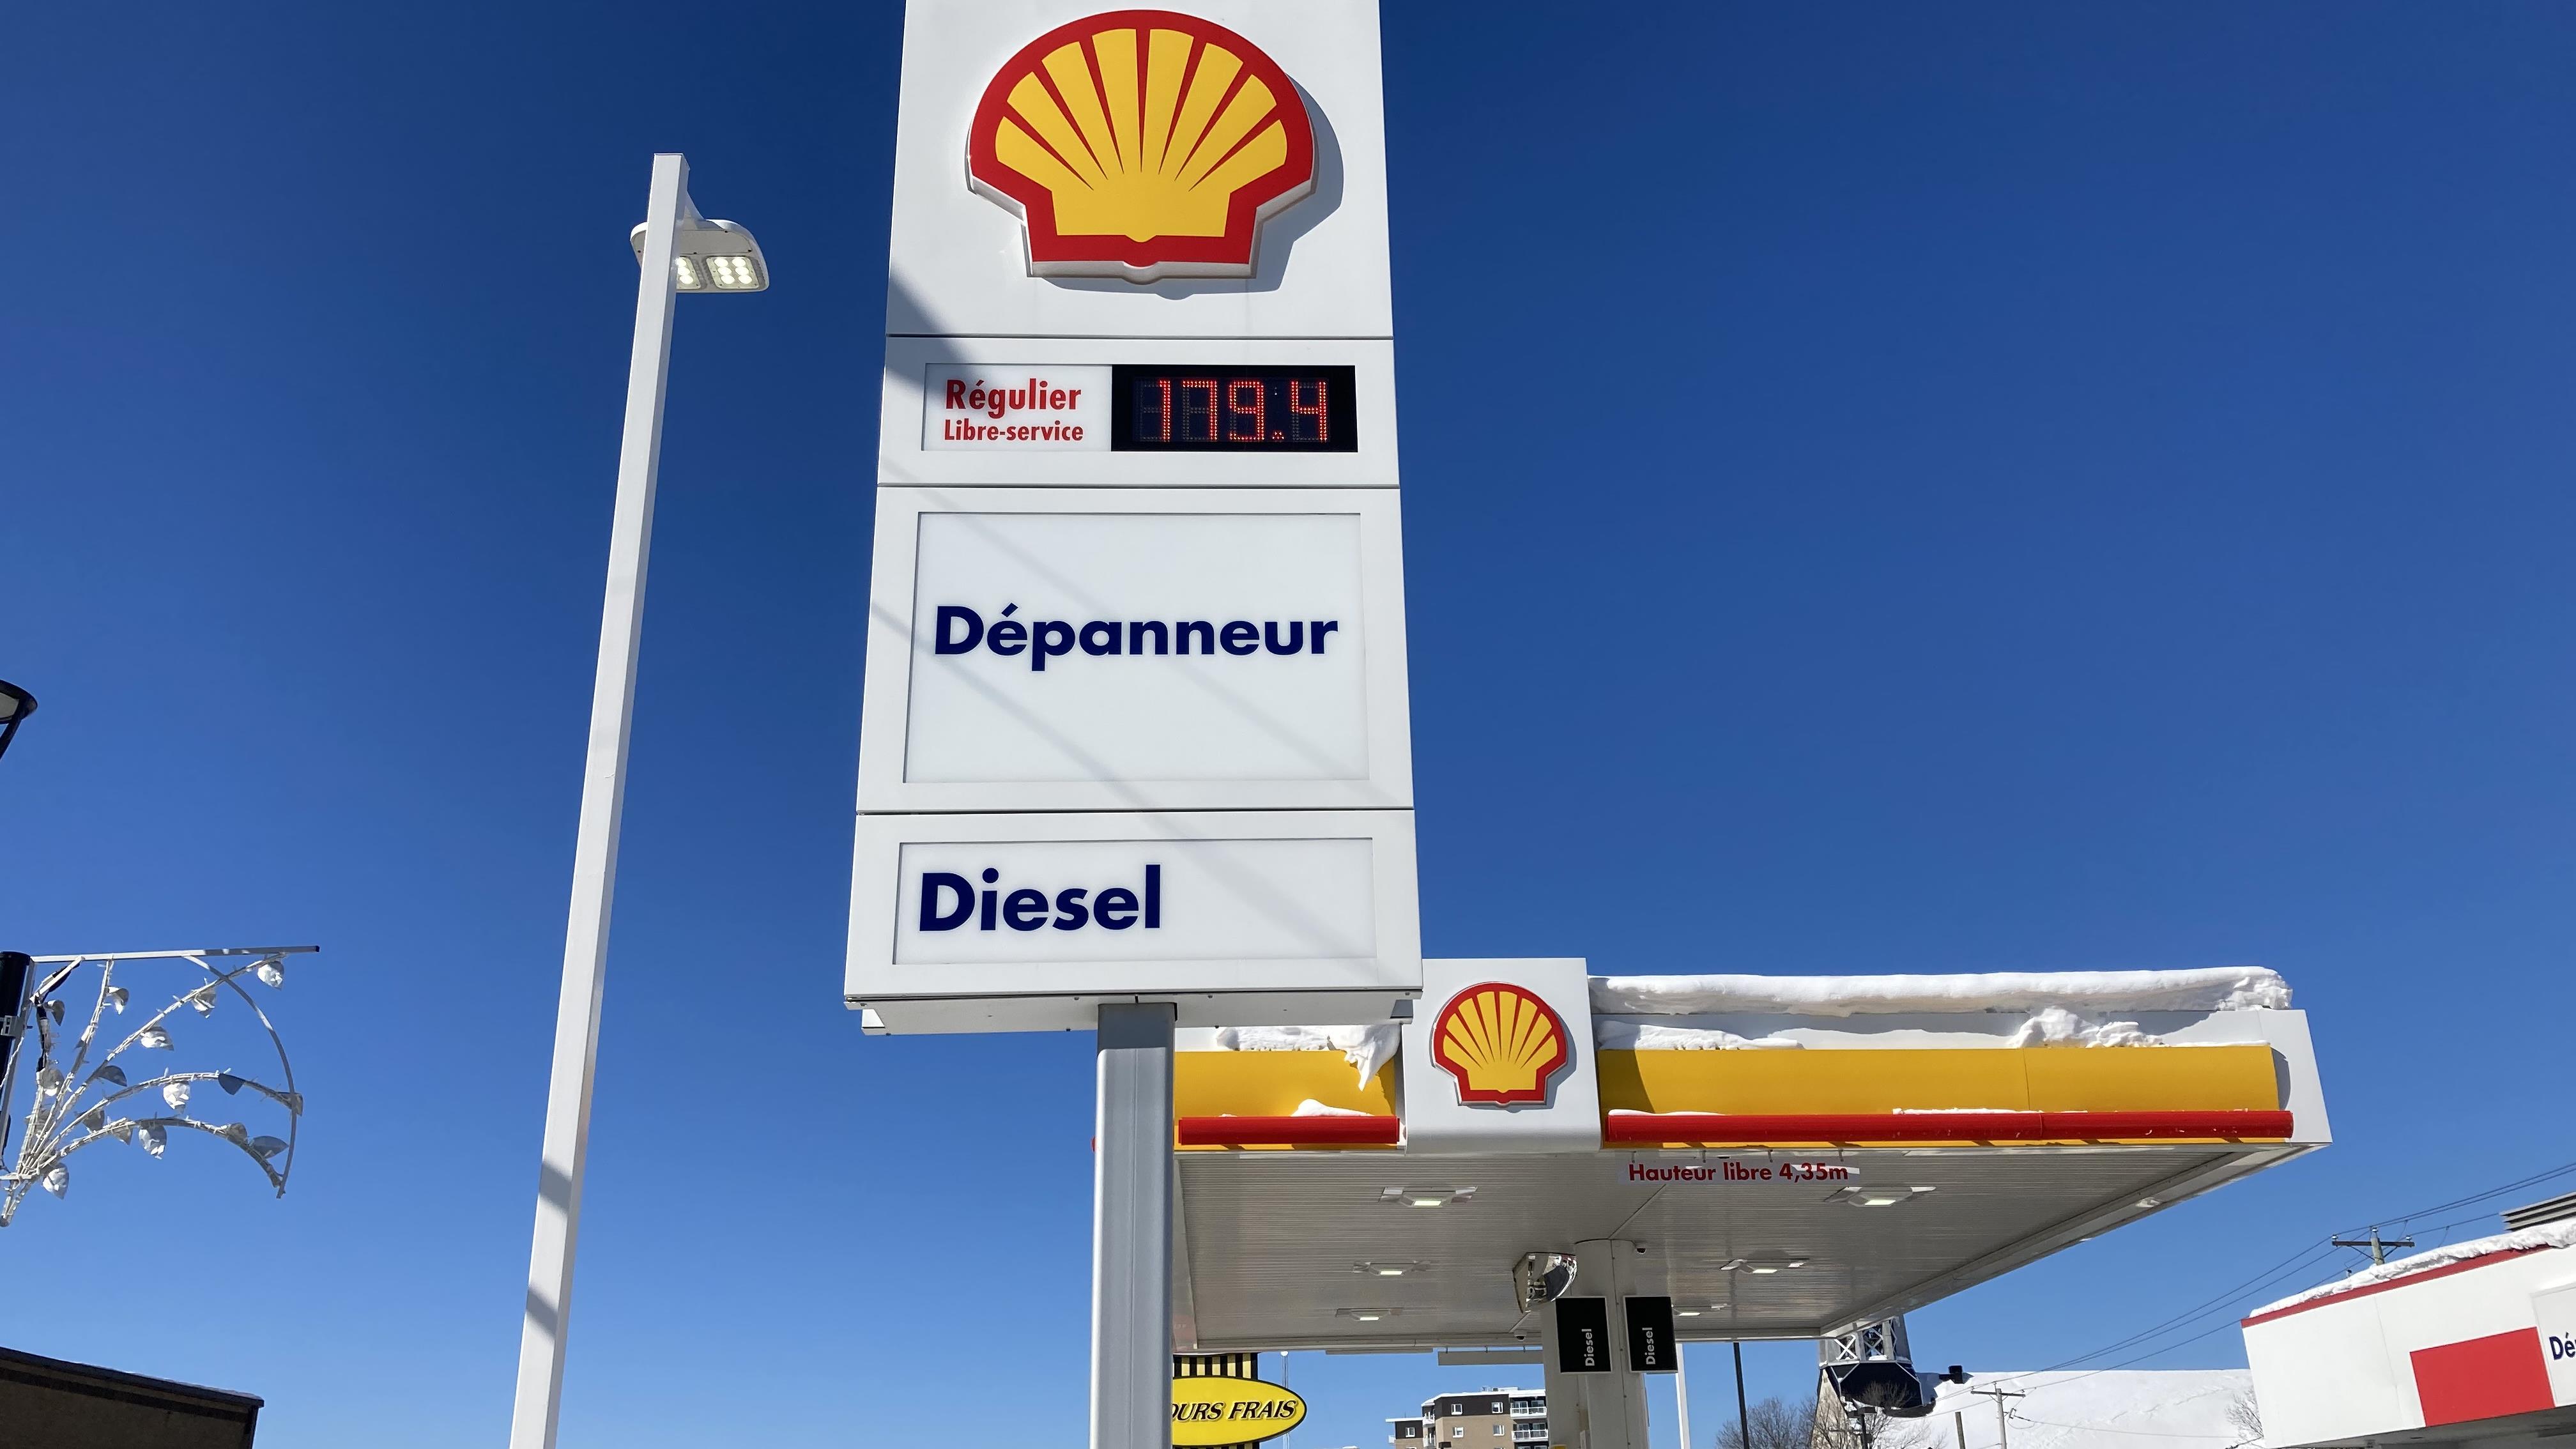 Le prix de l’essence bondit en Abitibi-Témiscamingue
Le prix de l’essence bondit en Abitibi-Témiscamingue